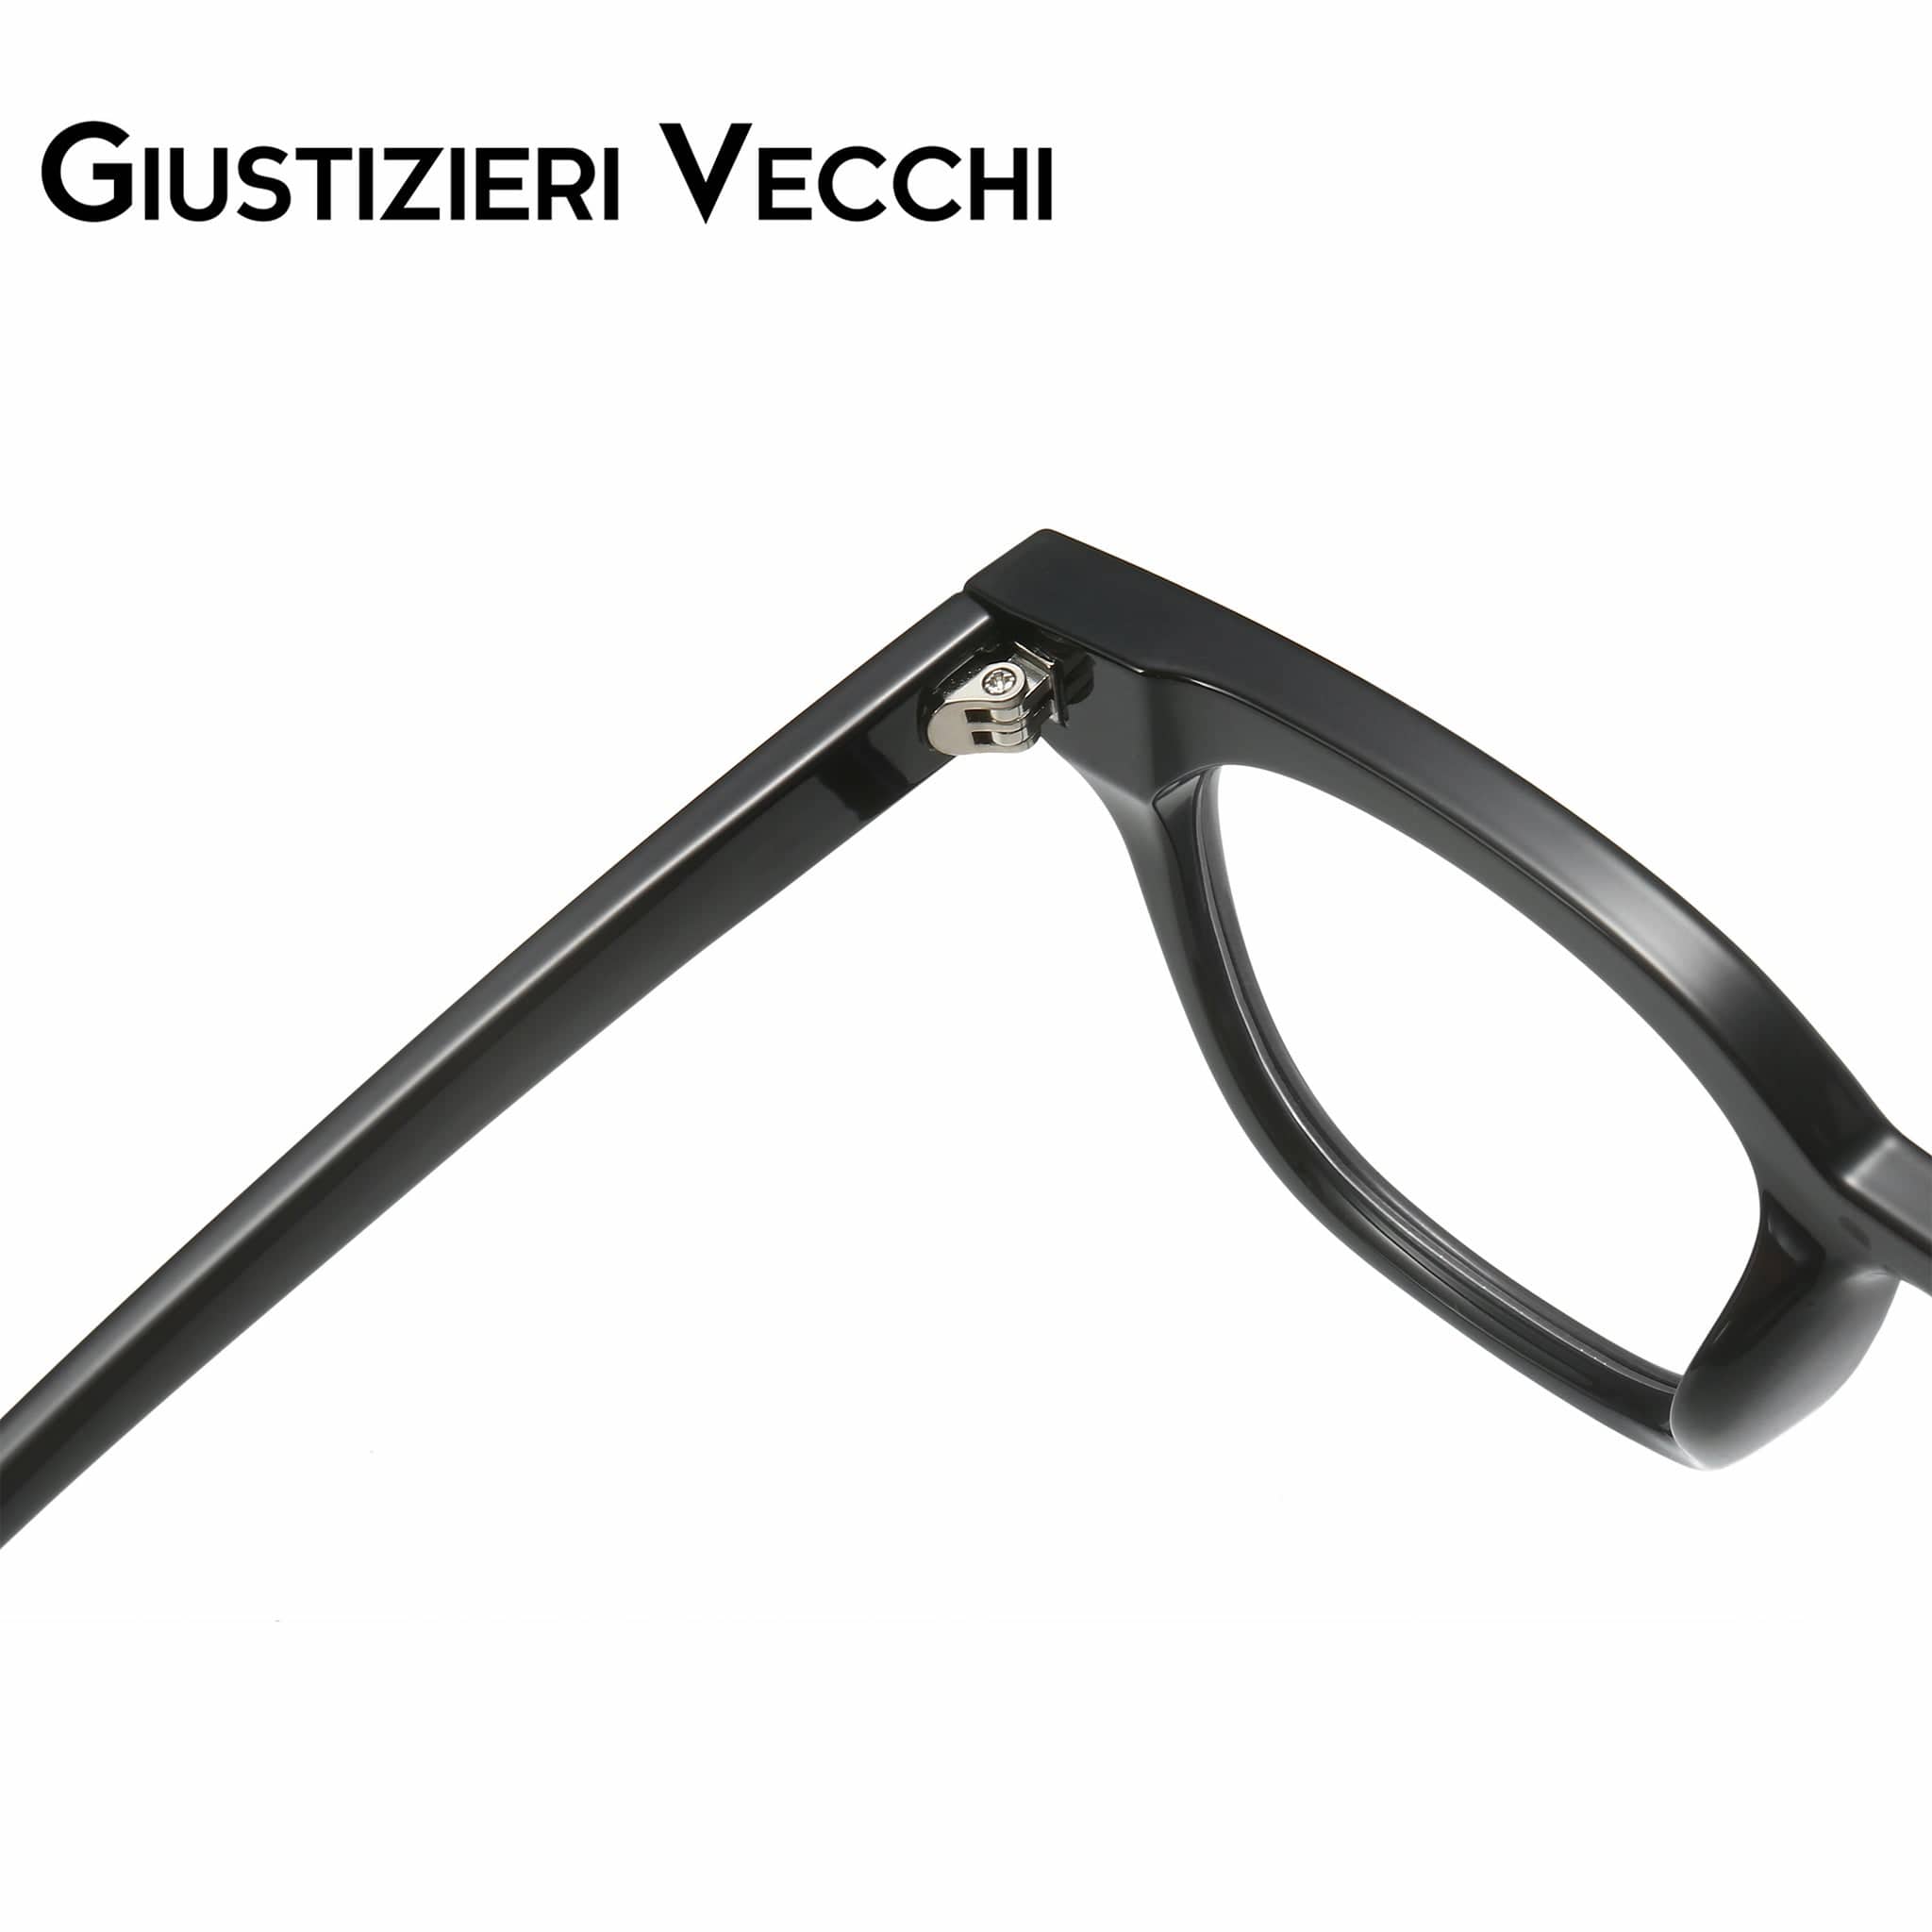 GIUSTIZIERI VECCHI Eyeglasses Phantom Uno